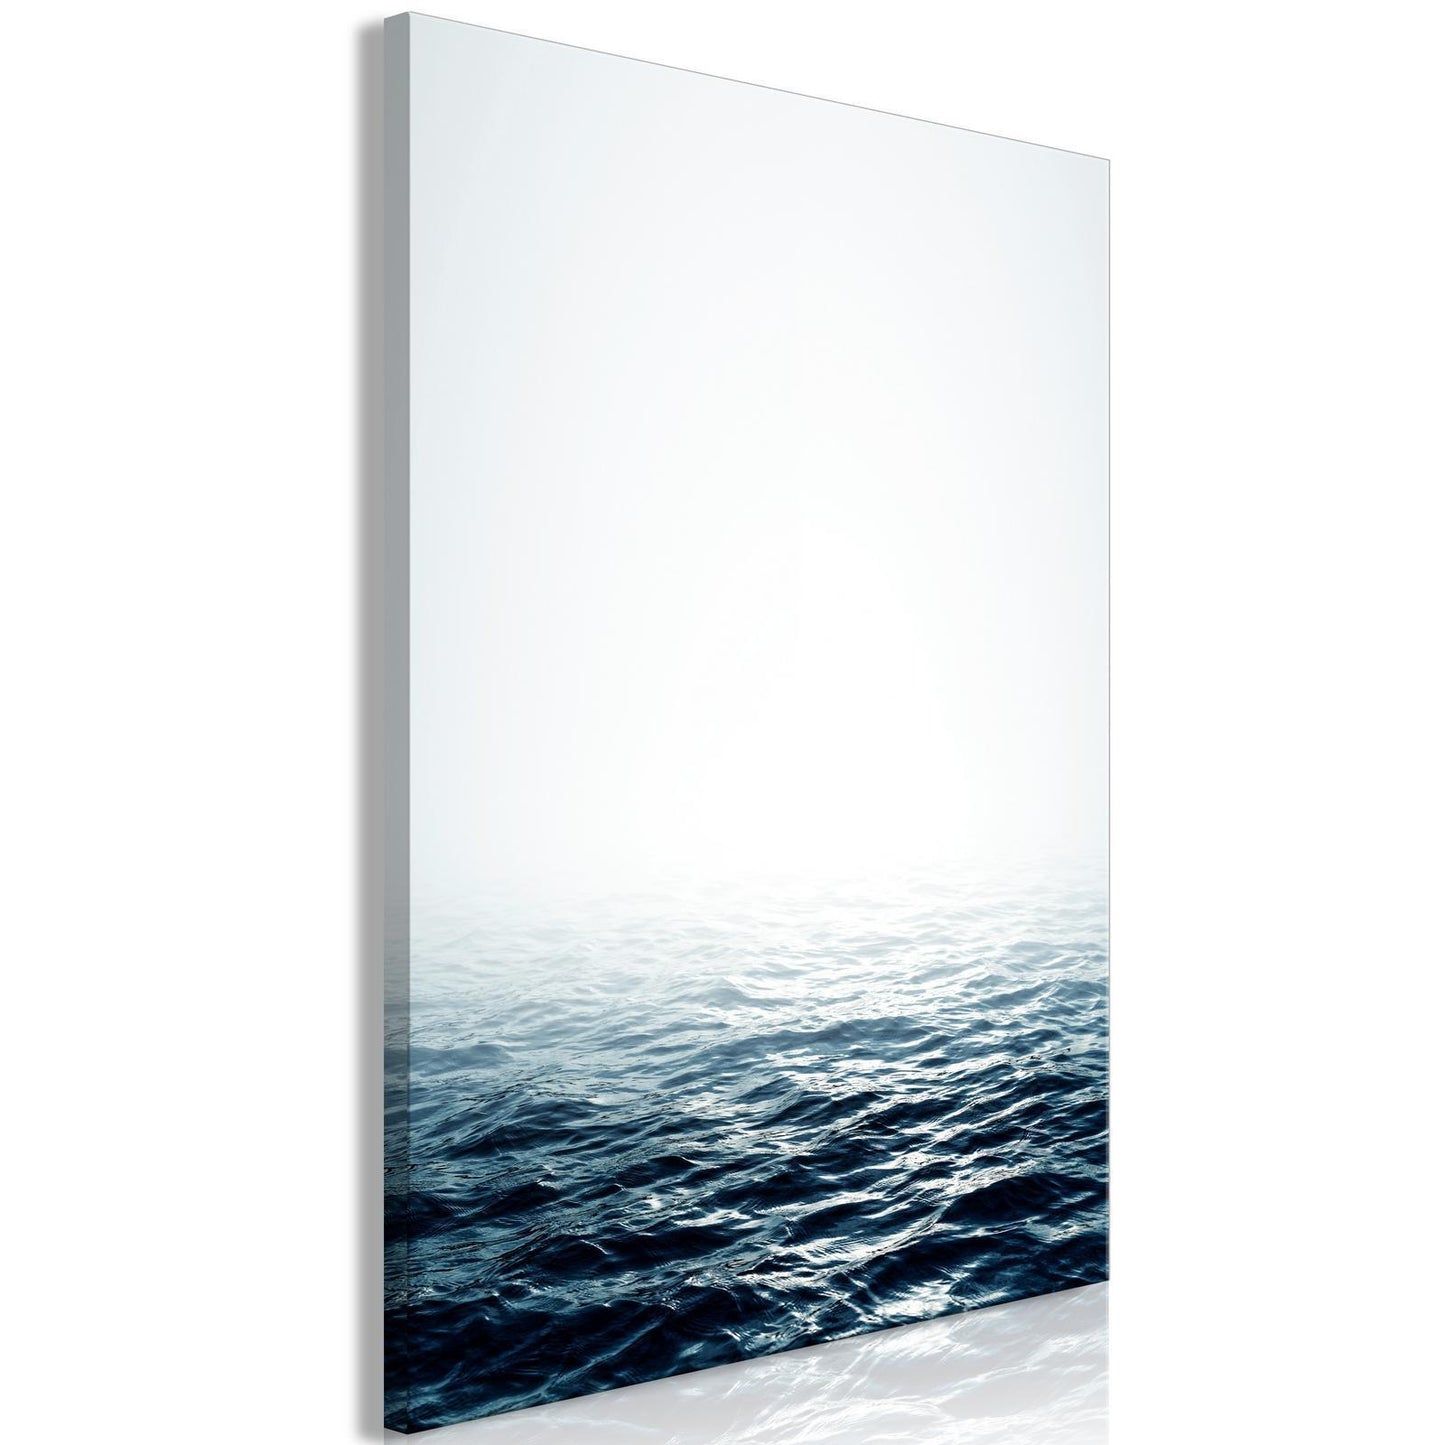 Schilderij - Ocean Water (1 Part) Vertical